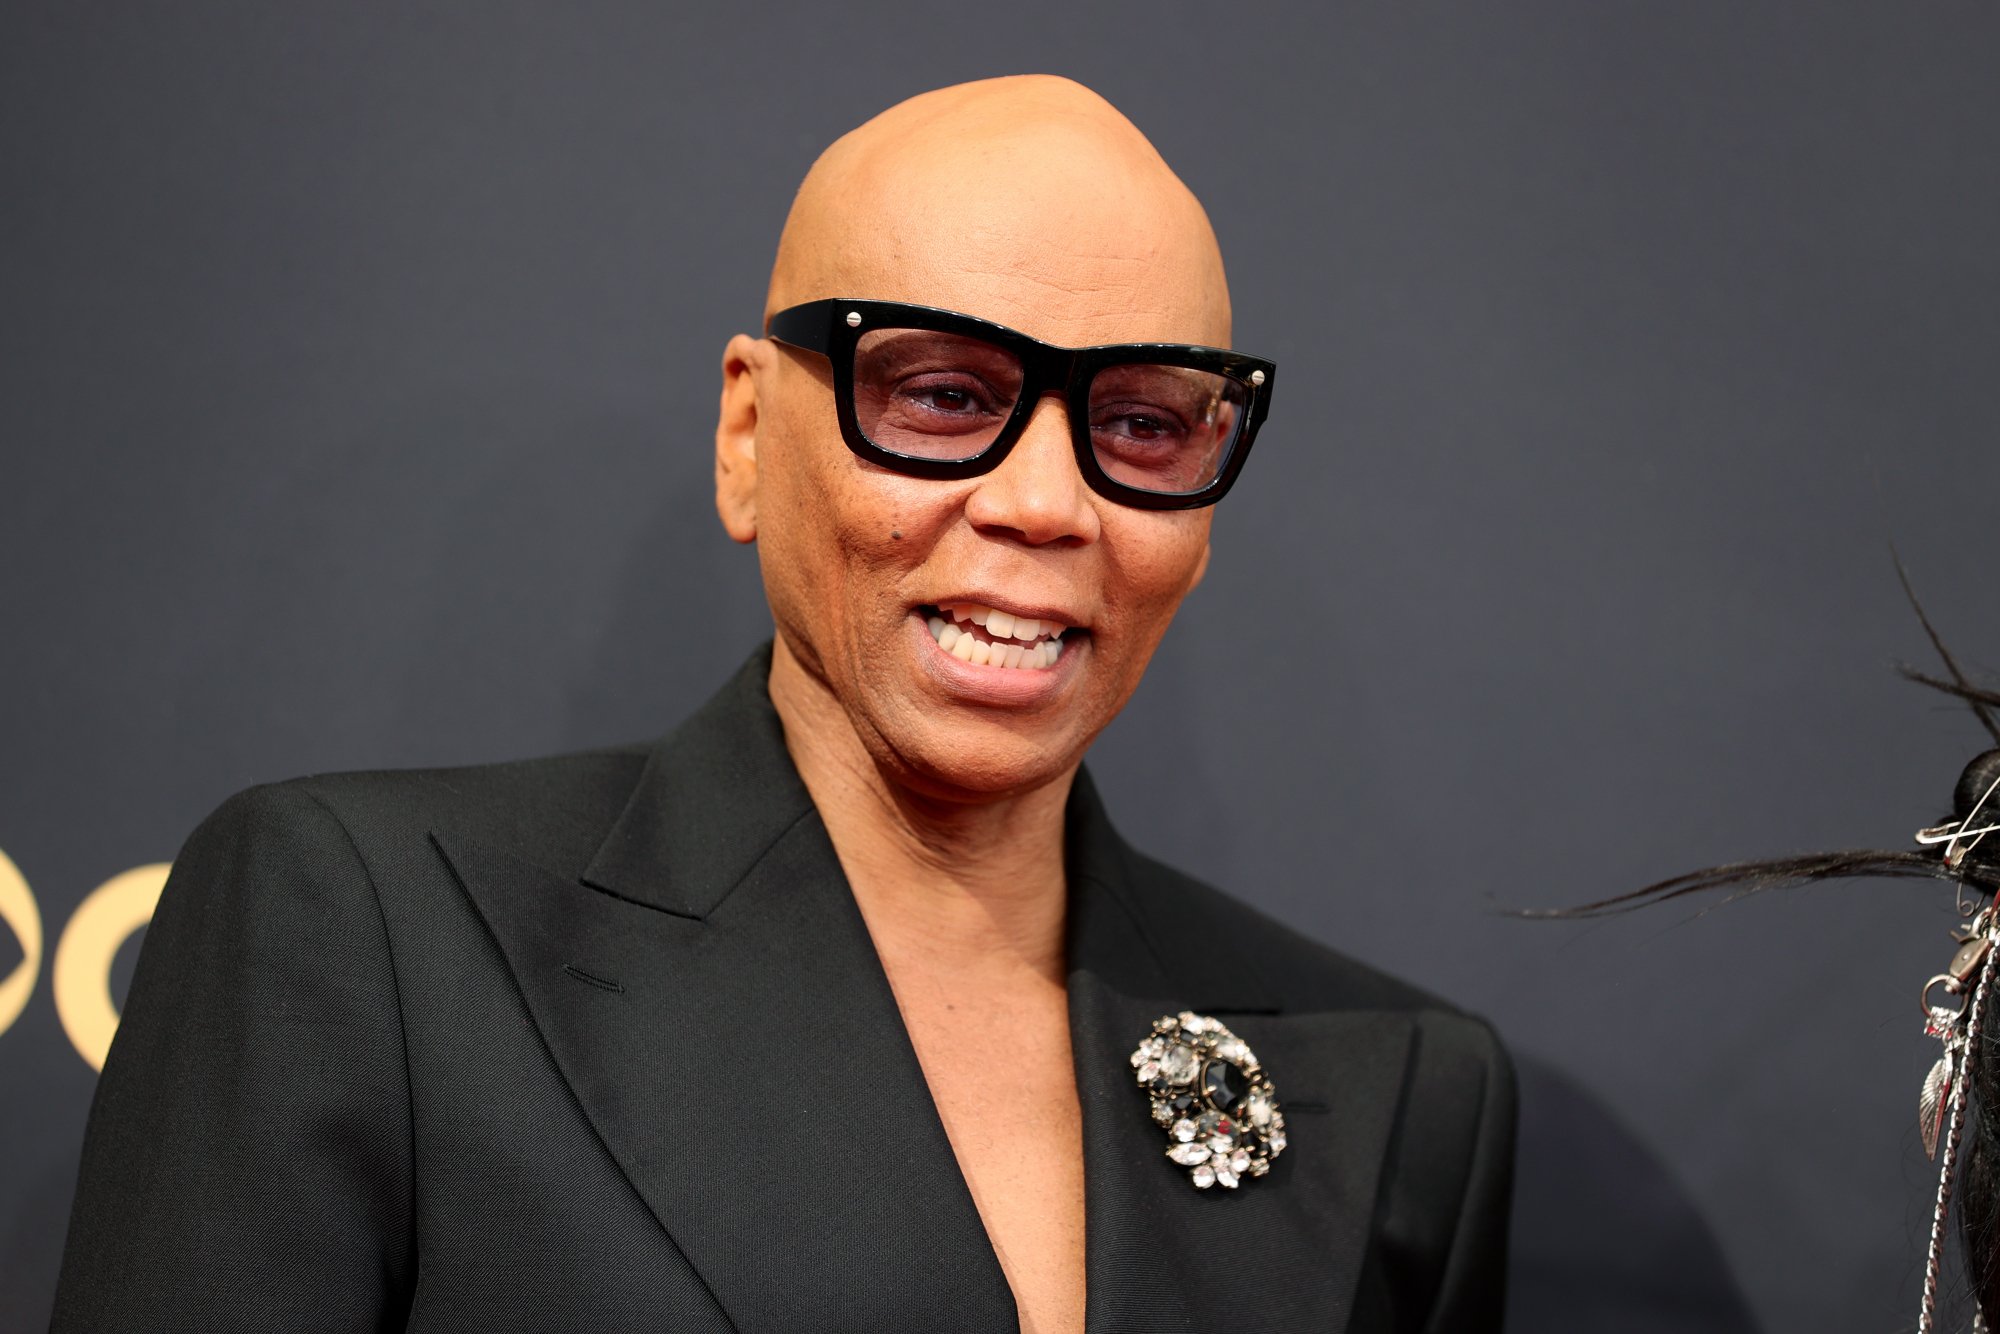 'RuPaul's Drag Race' host RuPaul smiling at the 73rd Primetime Emmy Awards 